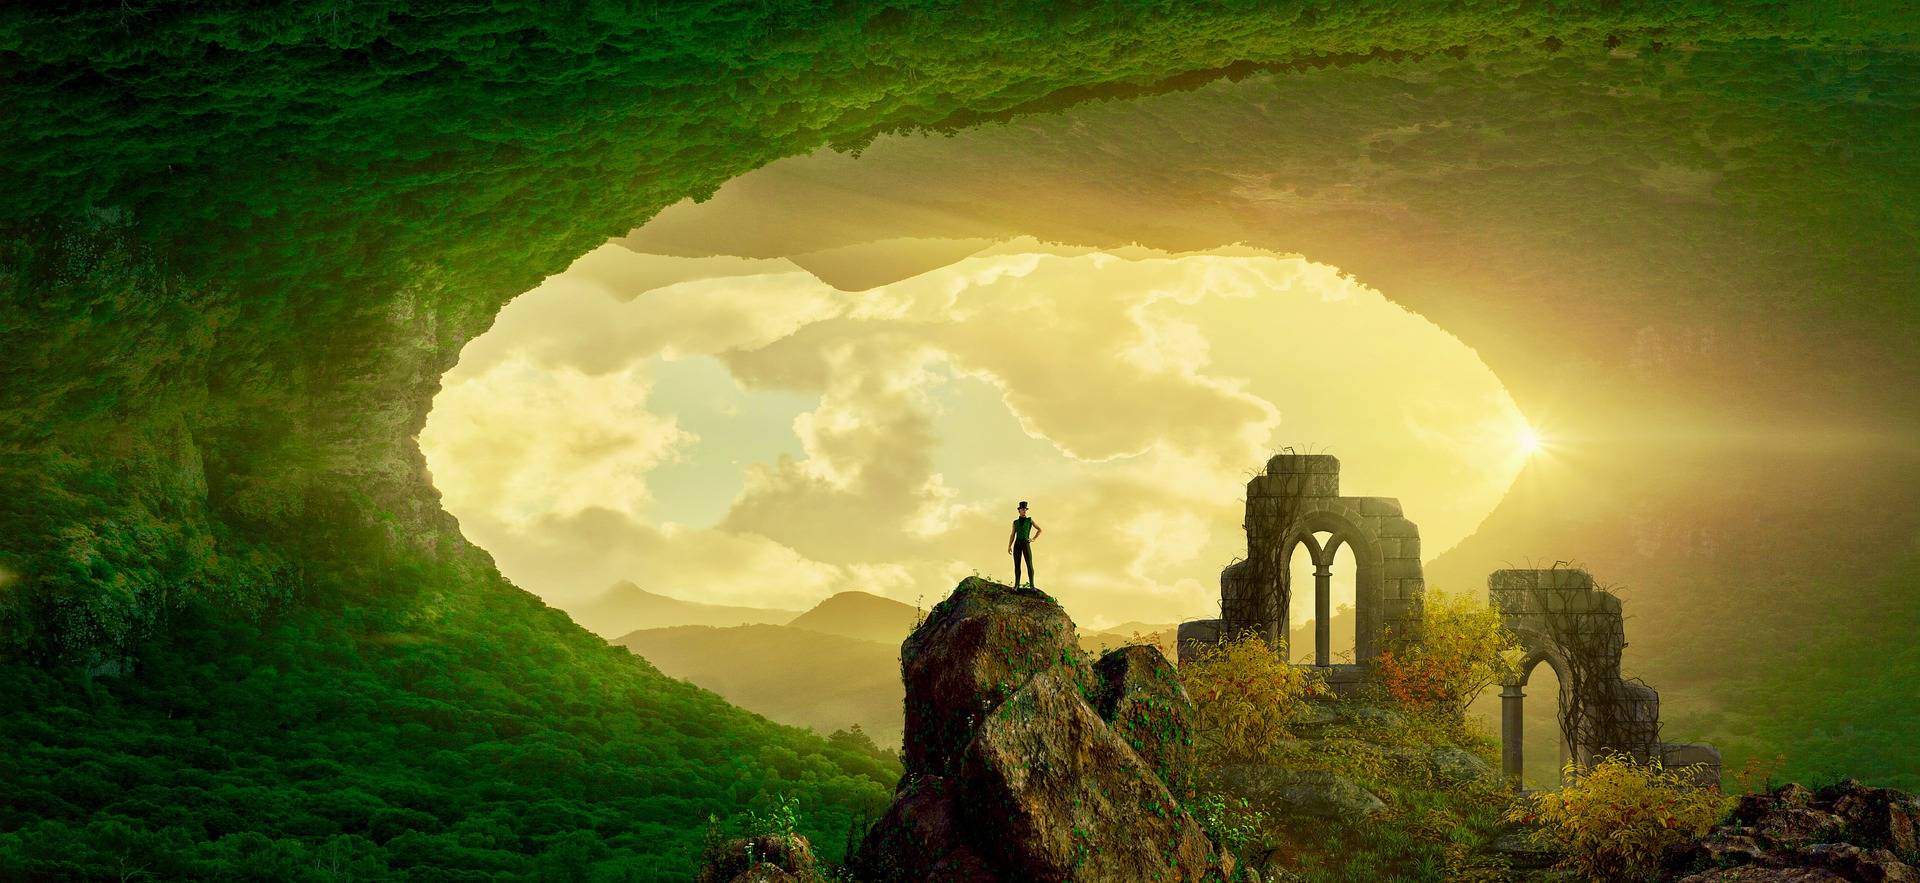 фантазийный рисунок человечка стоящего на скале, а сверху и снизу его окружает зелёная растительность и позади него льётся солнечный свет